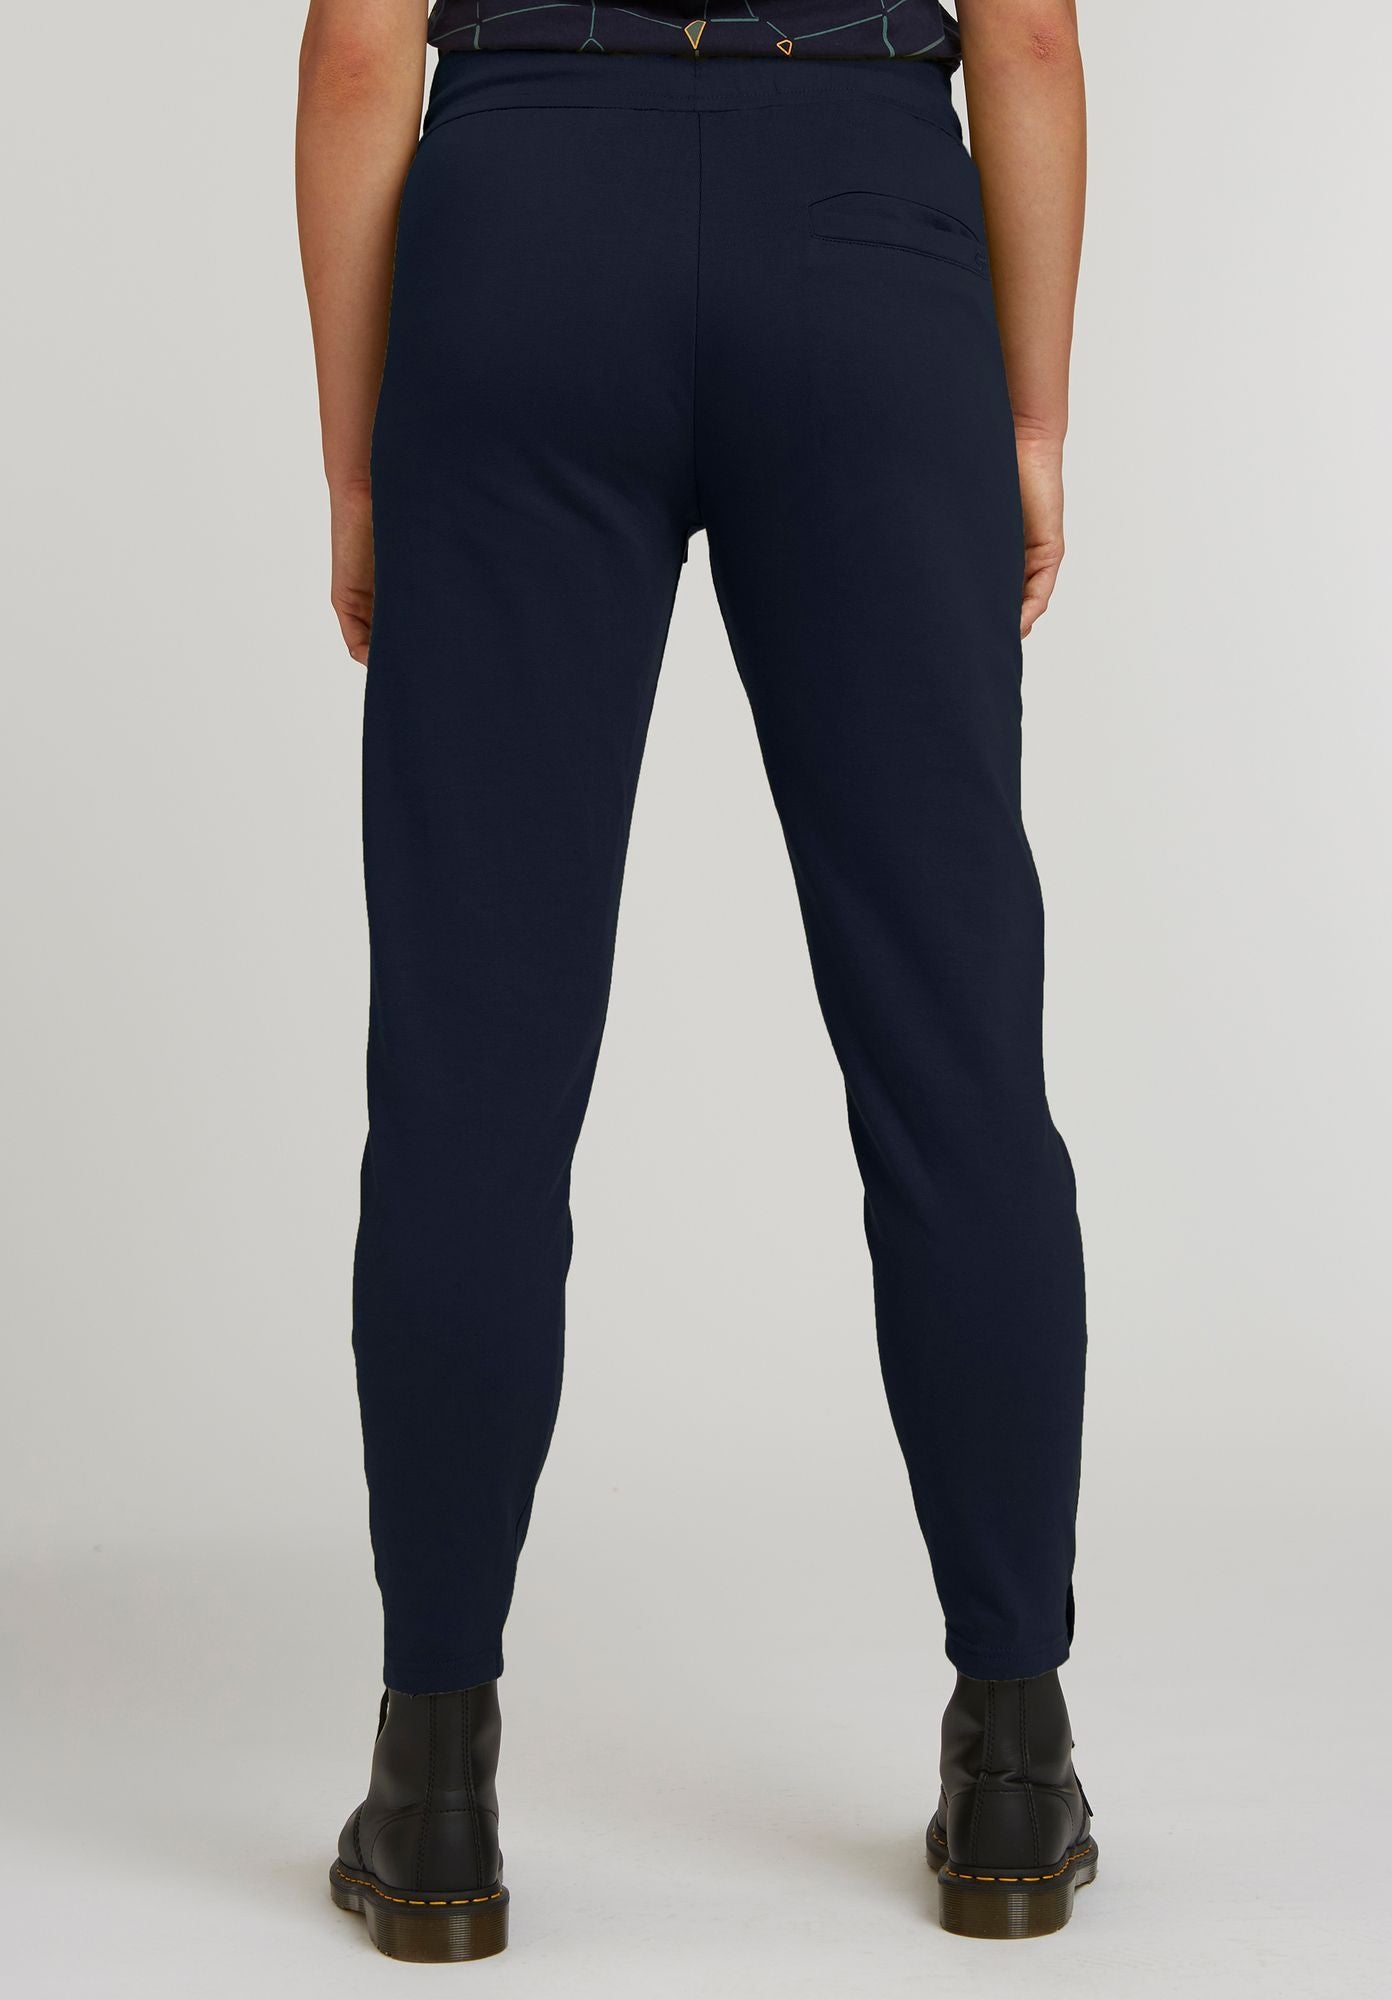 Zip Jogging Pants in dunkelblau aus Bio-Baumwolle von ThokkThokk (S)